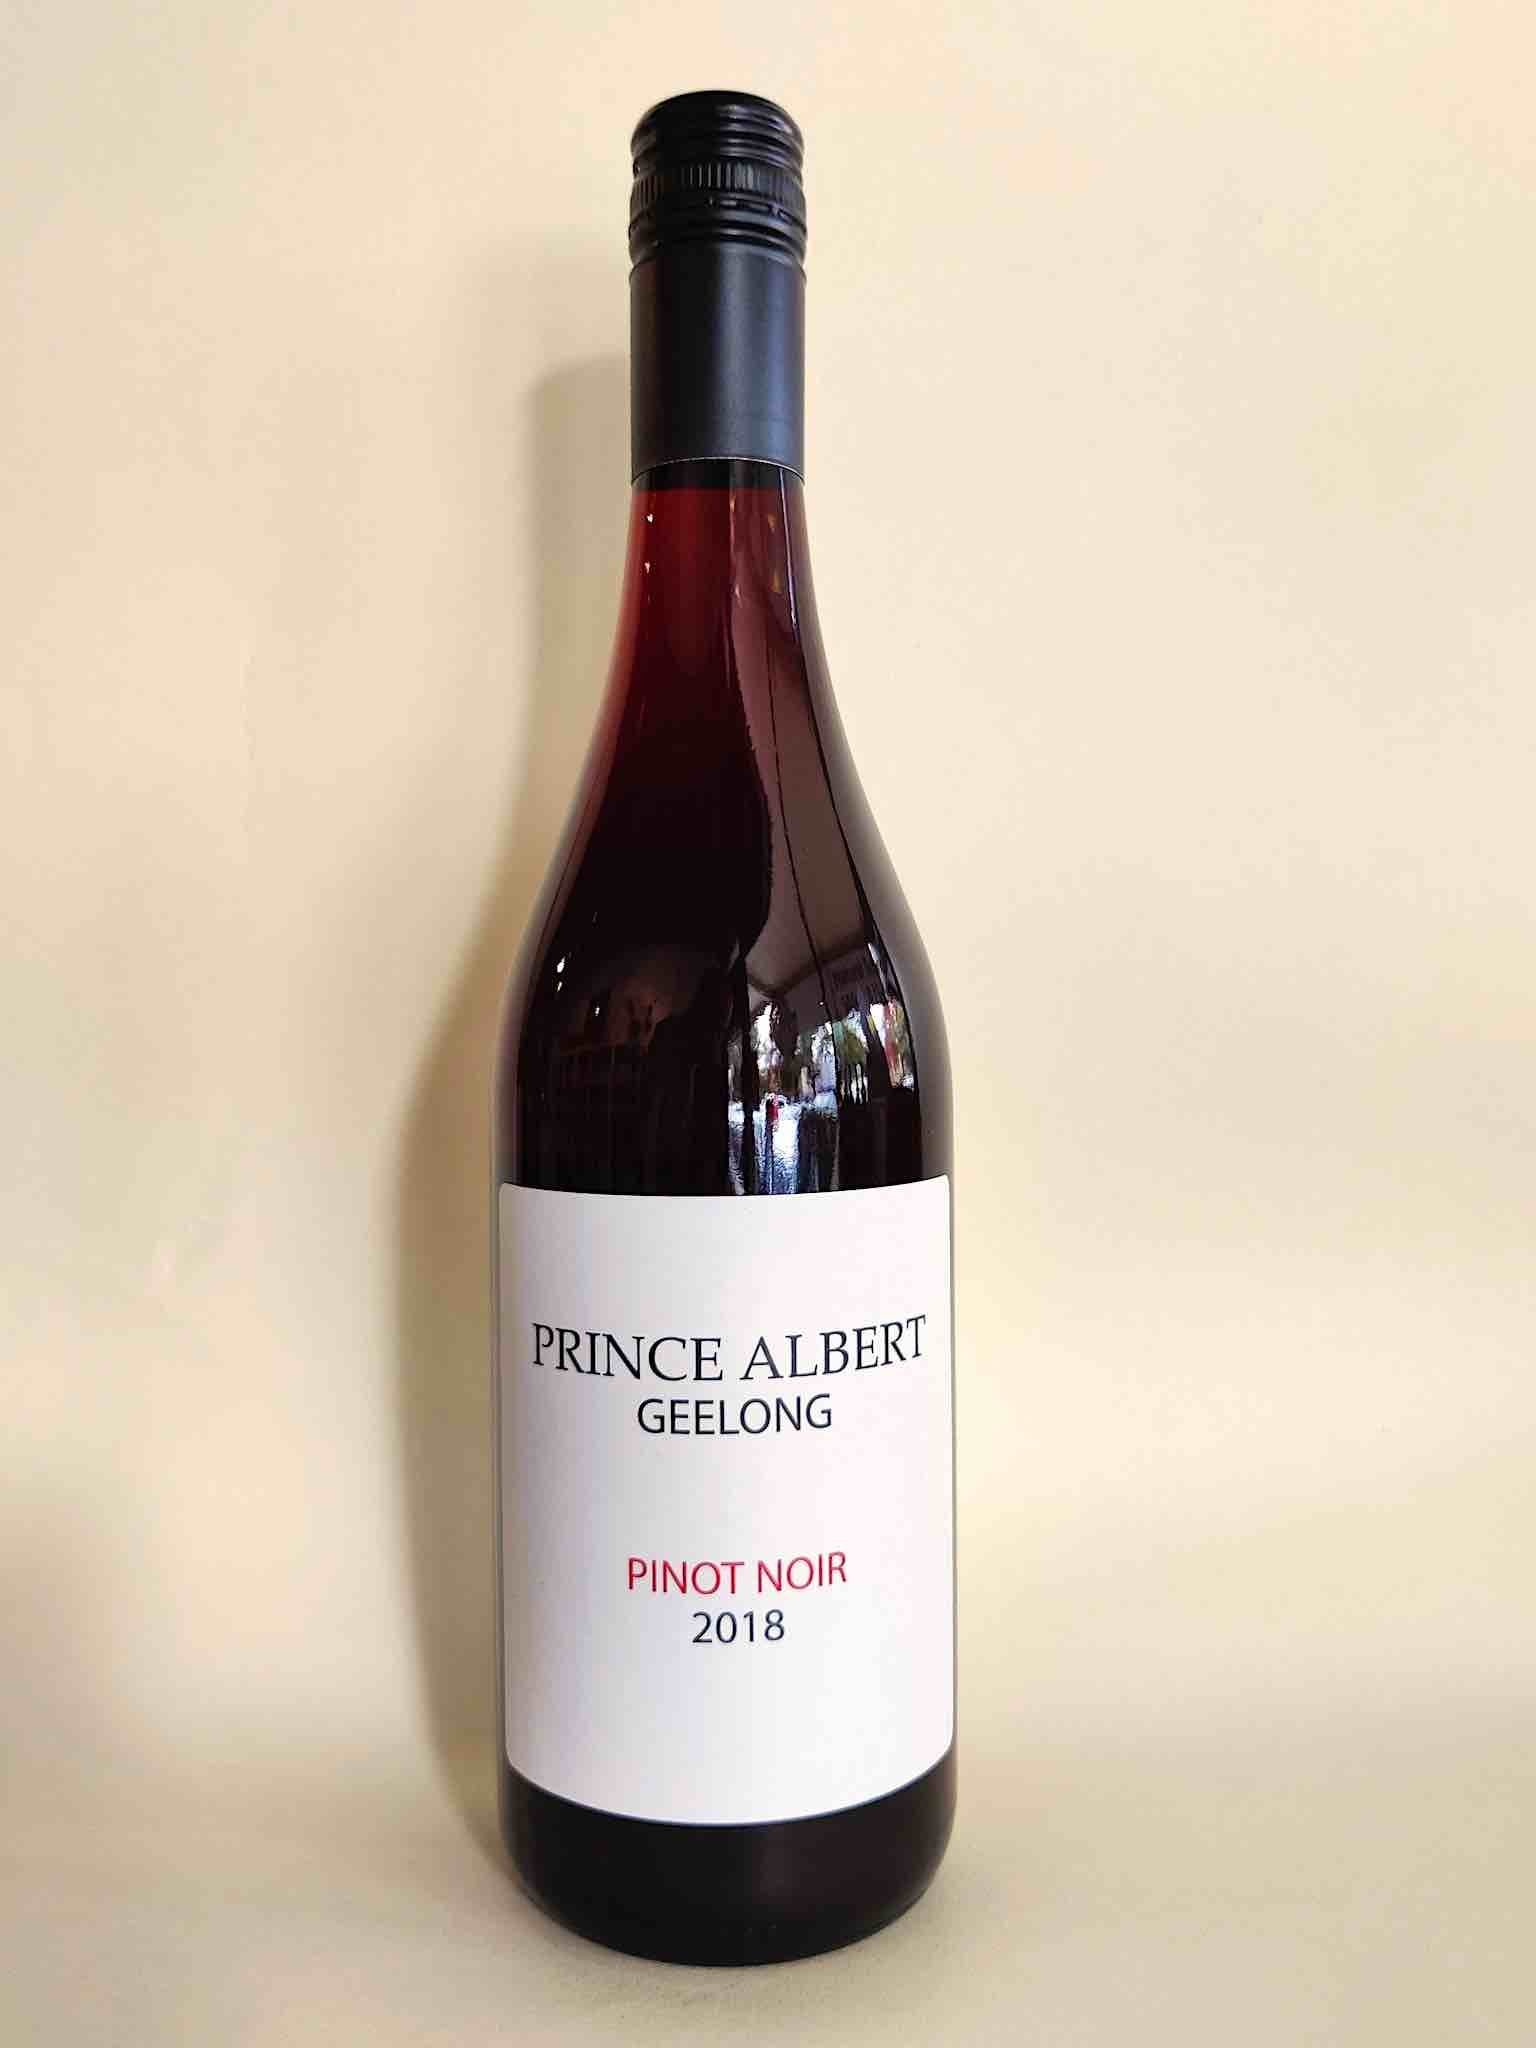 A bottle of Prince Albert Pinot Noir from Geelong, Victoria.